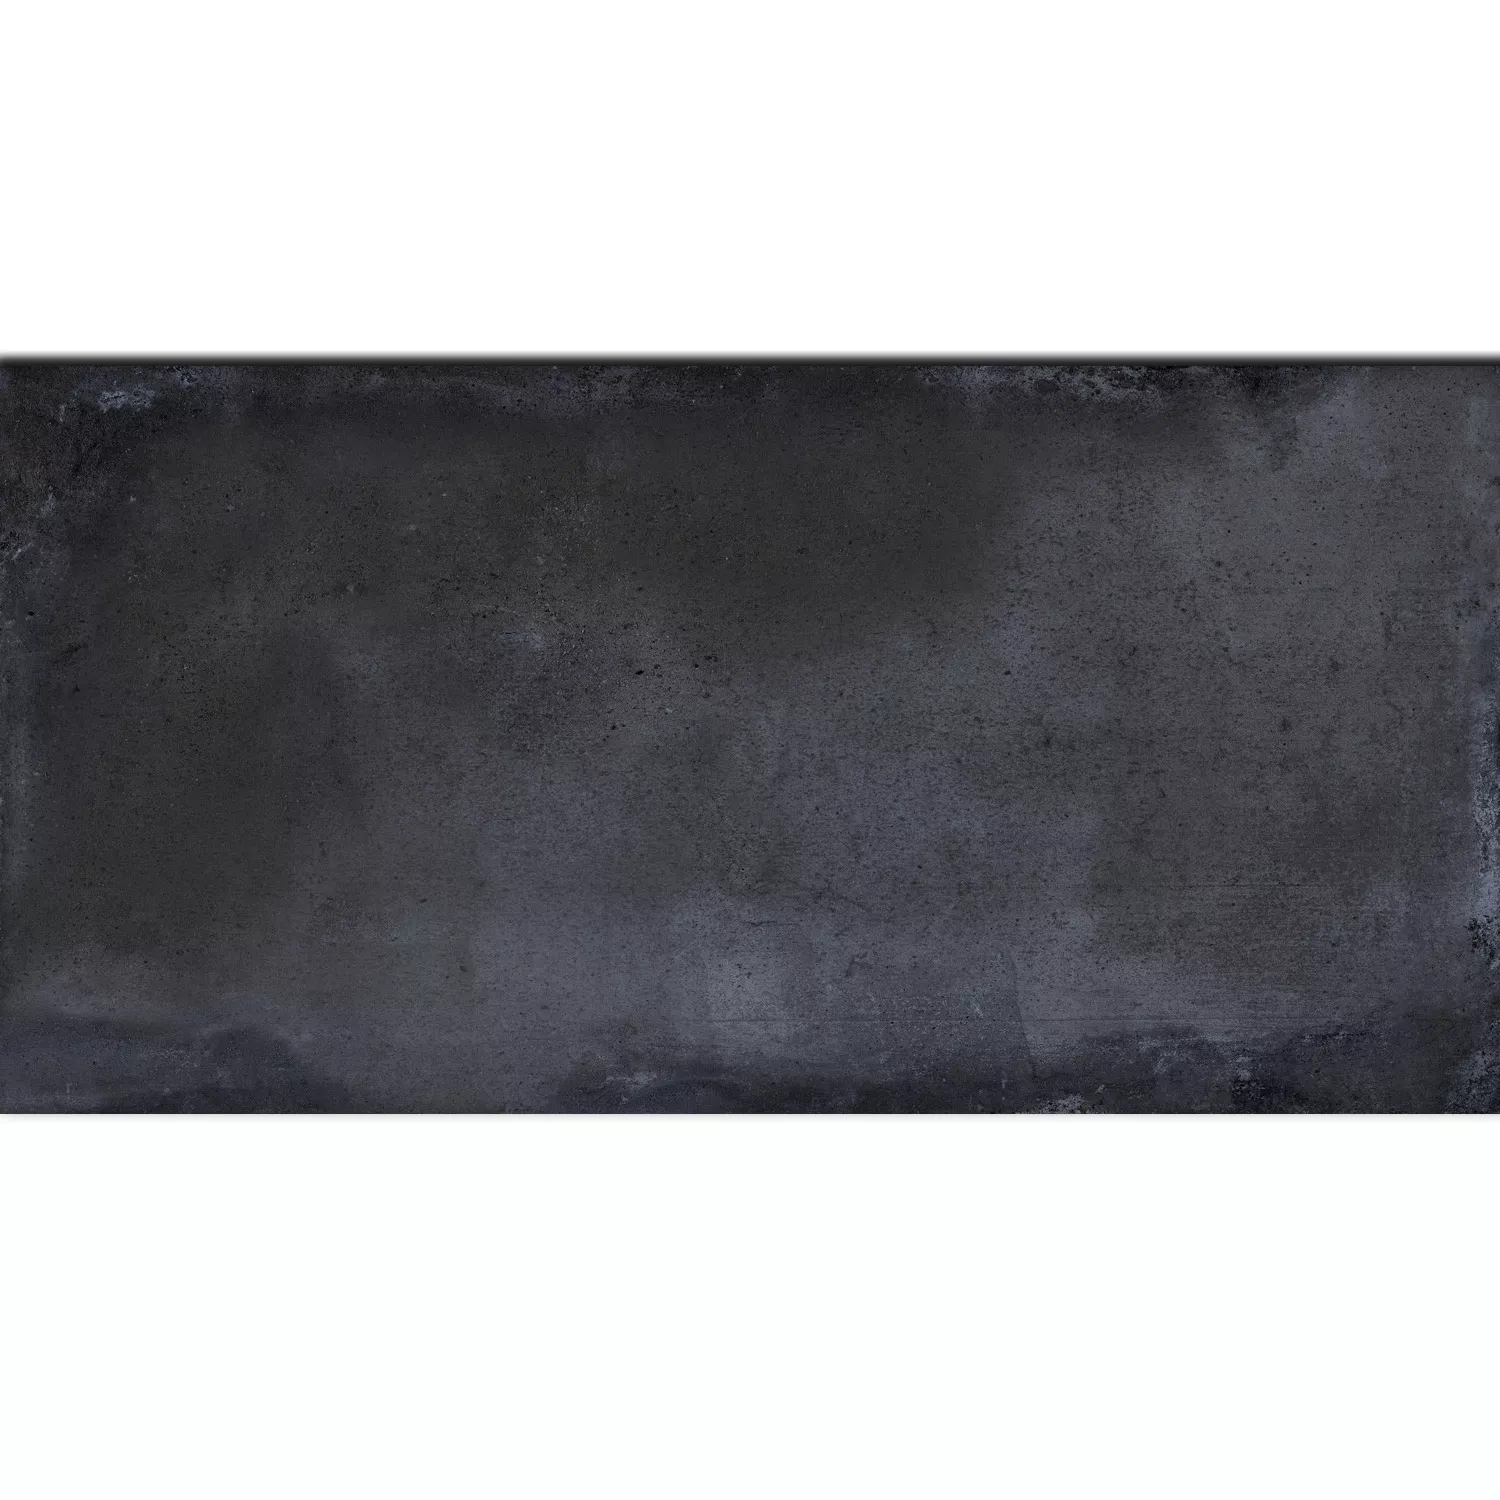 Πρότυπο Πλακάκι Δαπέδου Εμφάνιση Tσιμέντου Maryland Ανθρακίτης 30x60cm